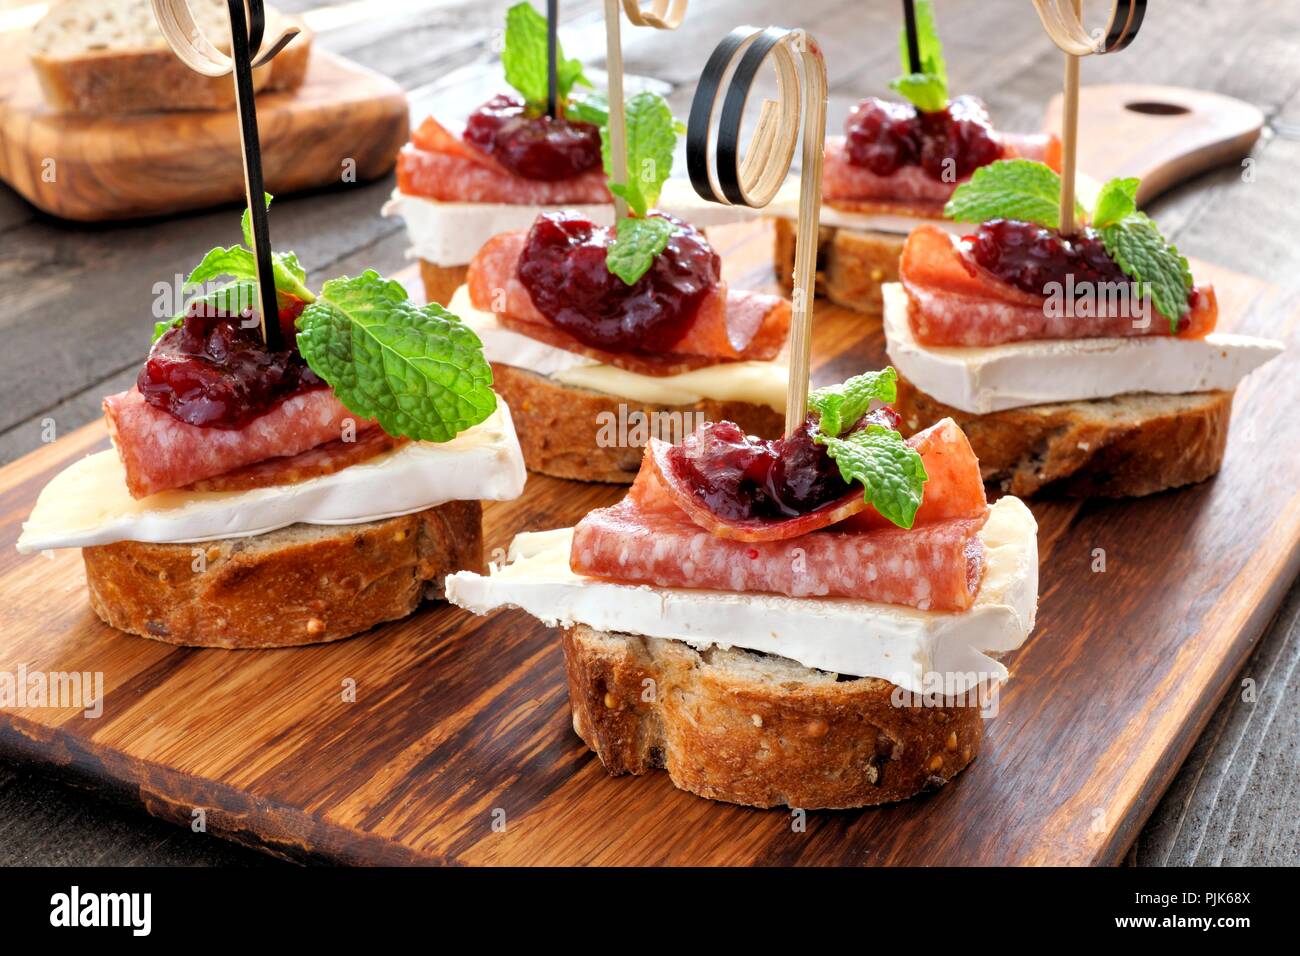 Urlaub crostini Vorspeise mit Preiselbeersoße, Brie, Salami und Minze auf einer hölzernen Server Stockfoto